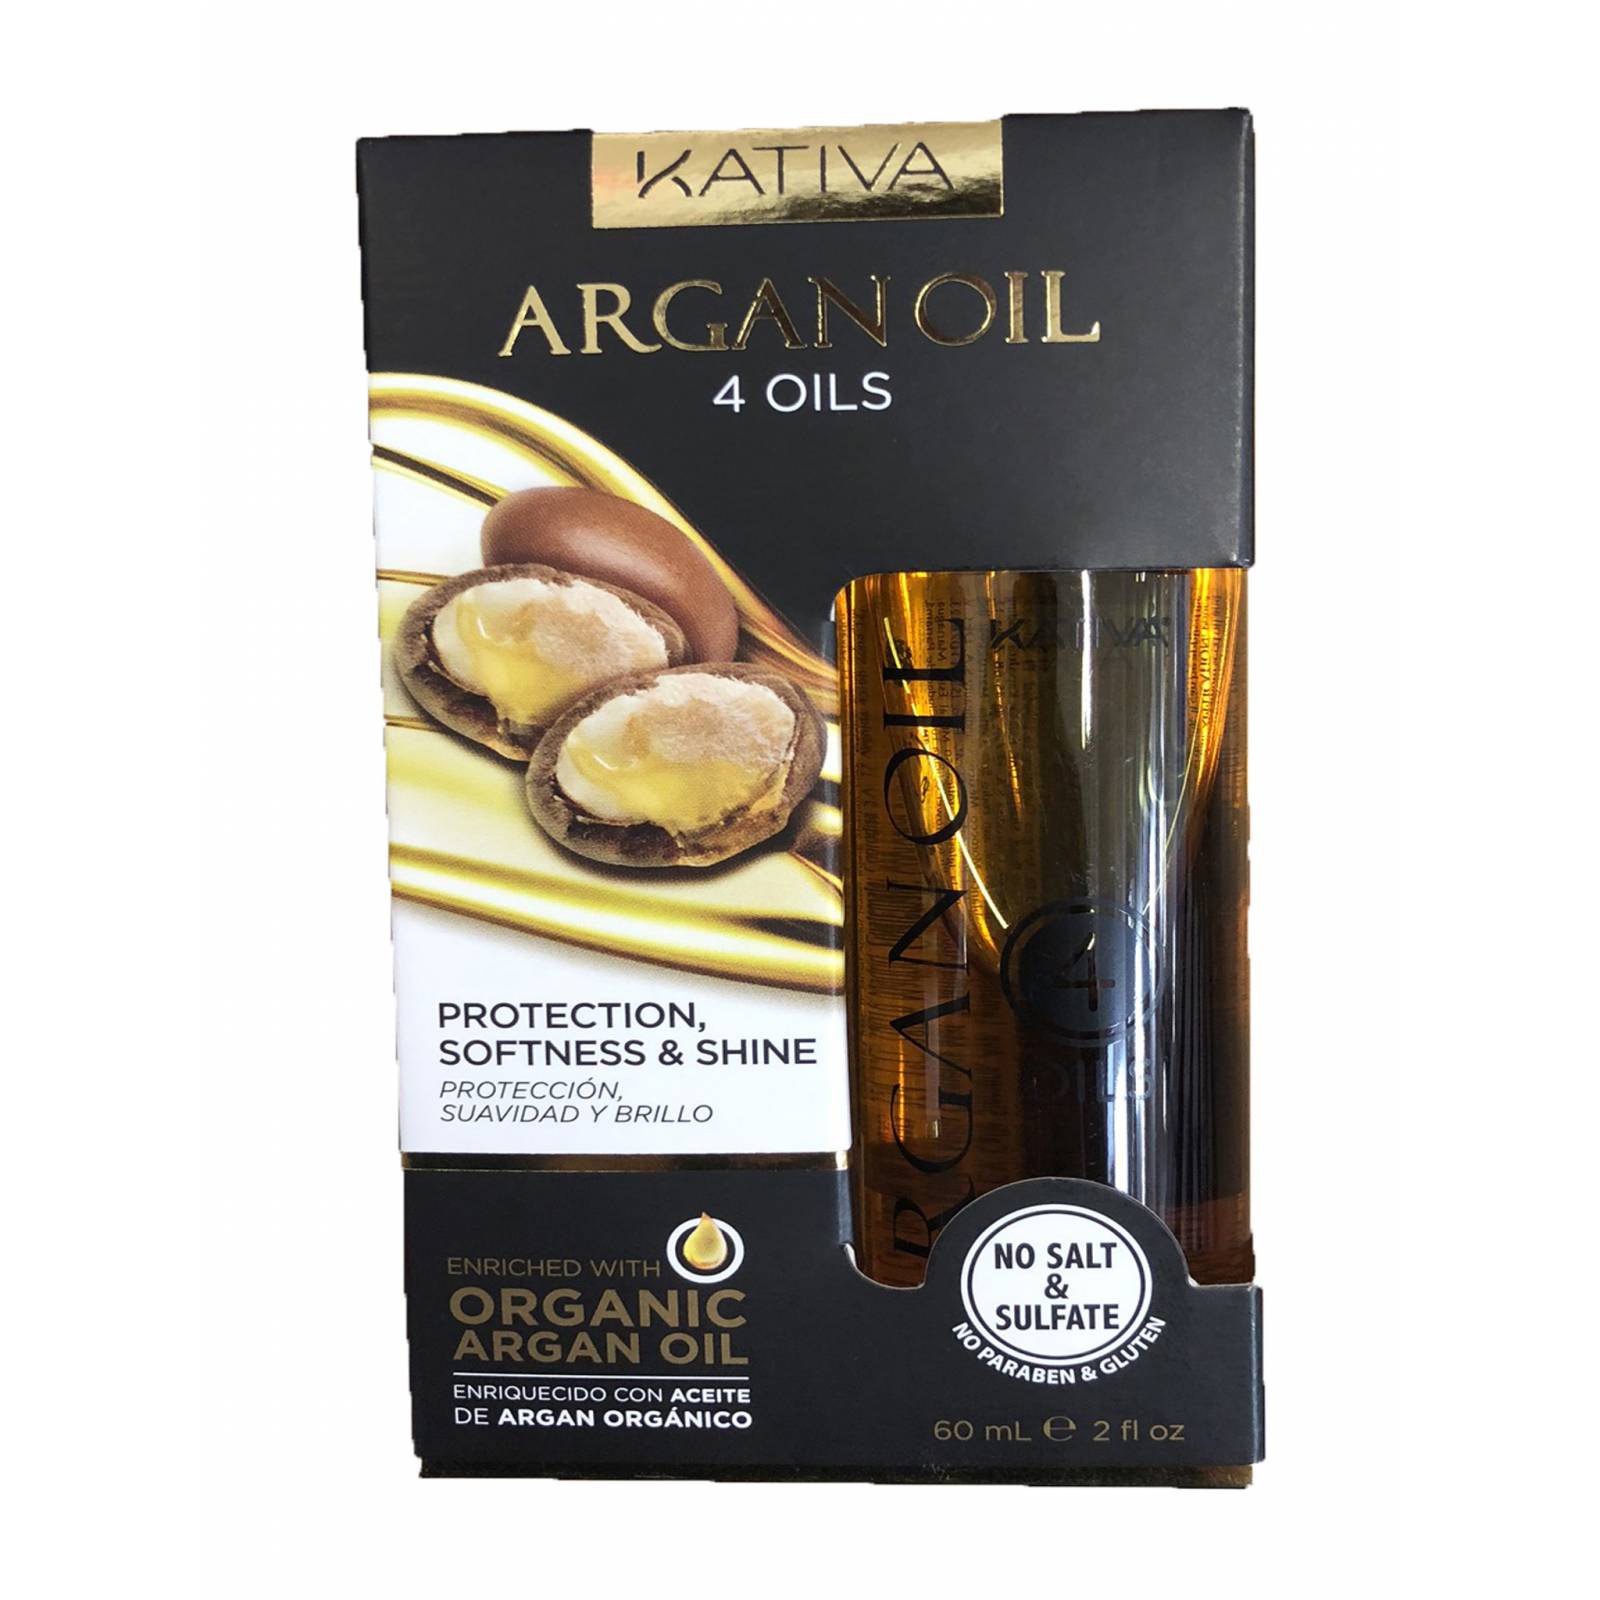 Kativa Argan Oil - 4 Aceites organicos para protección suavidad y brillo del cabello 60 ml